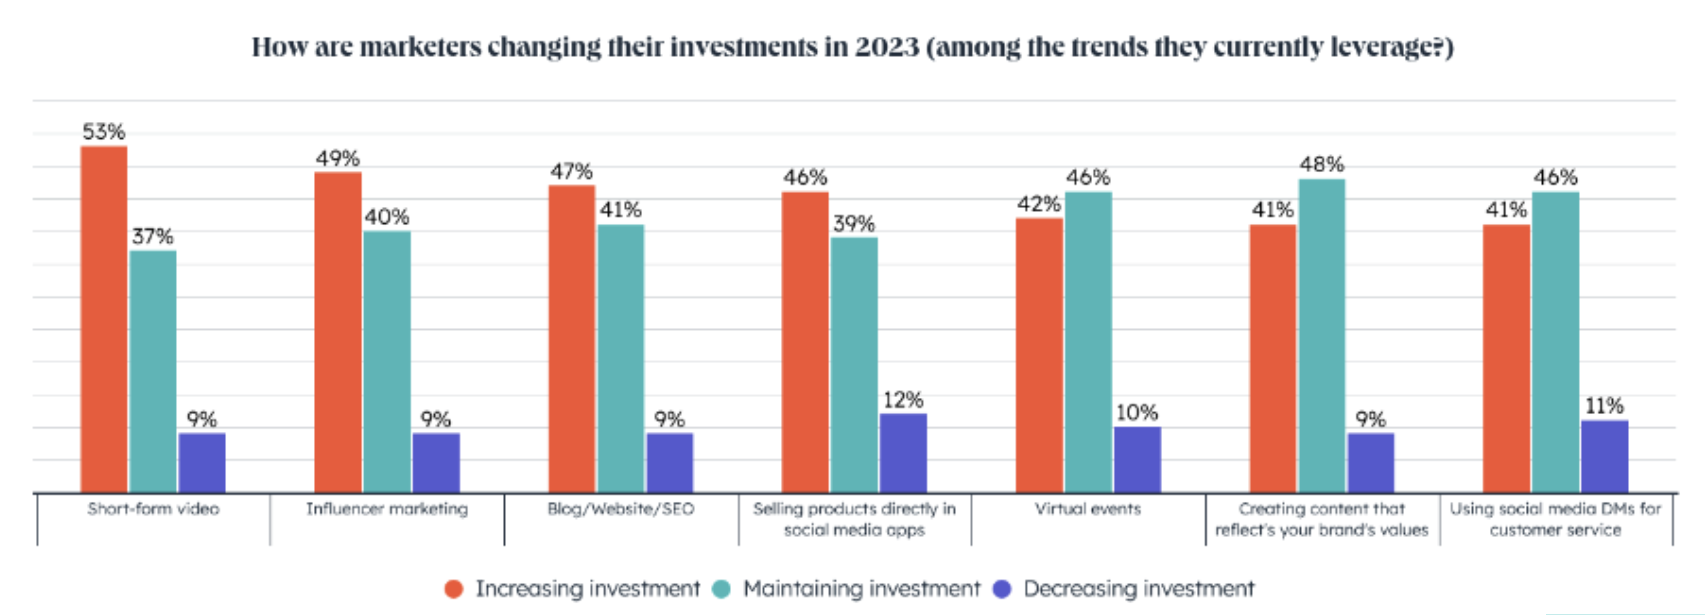 ग्राफ़ दिखा रहा है कि कैसे विपणक 2023 में अपने निवेश को बदल रहे हैं, और अपने मूल्यों को प्रदर्शित करने वाली सामग्री बनाना निवेशों में से है। 